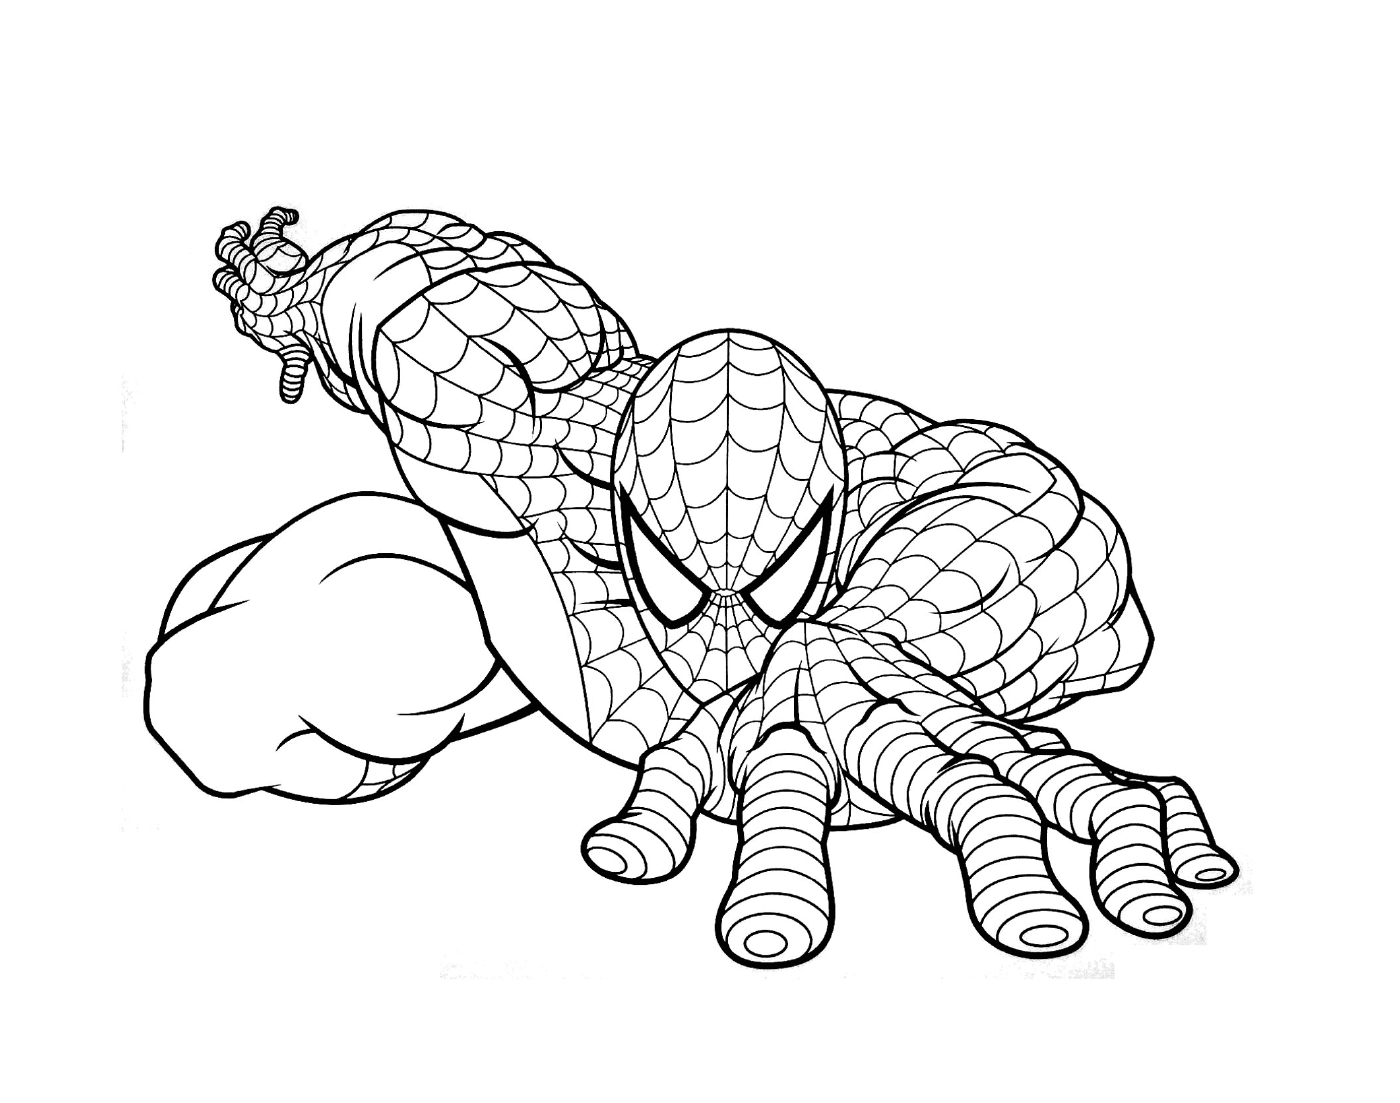  Spiderman rappresentato in disegno 